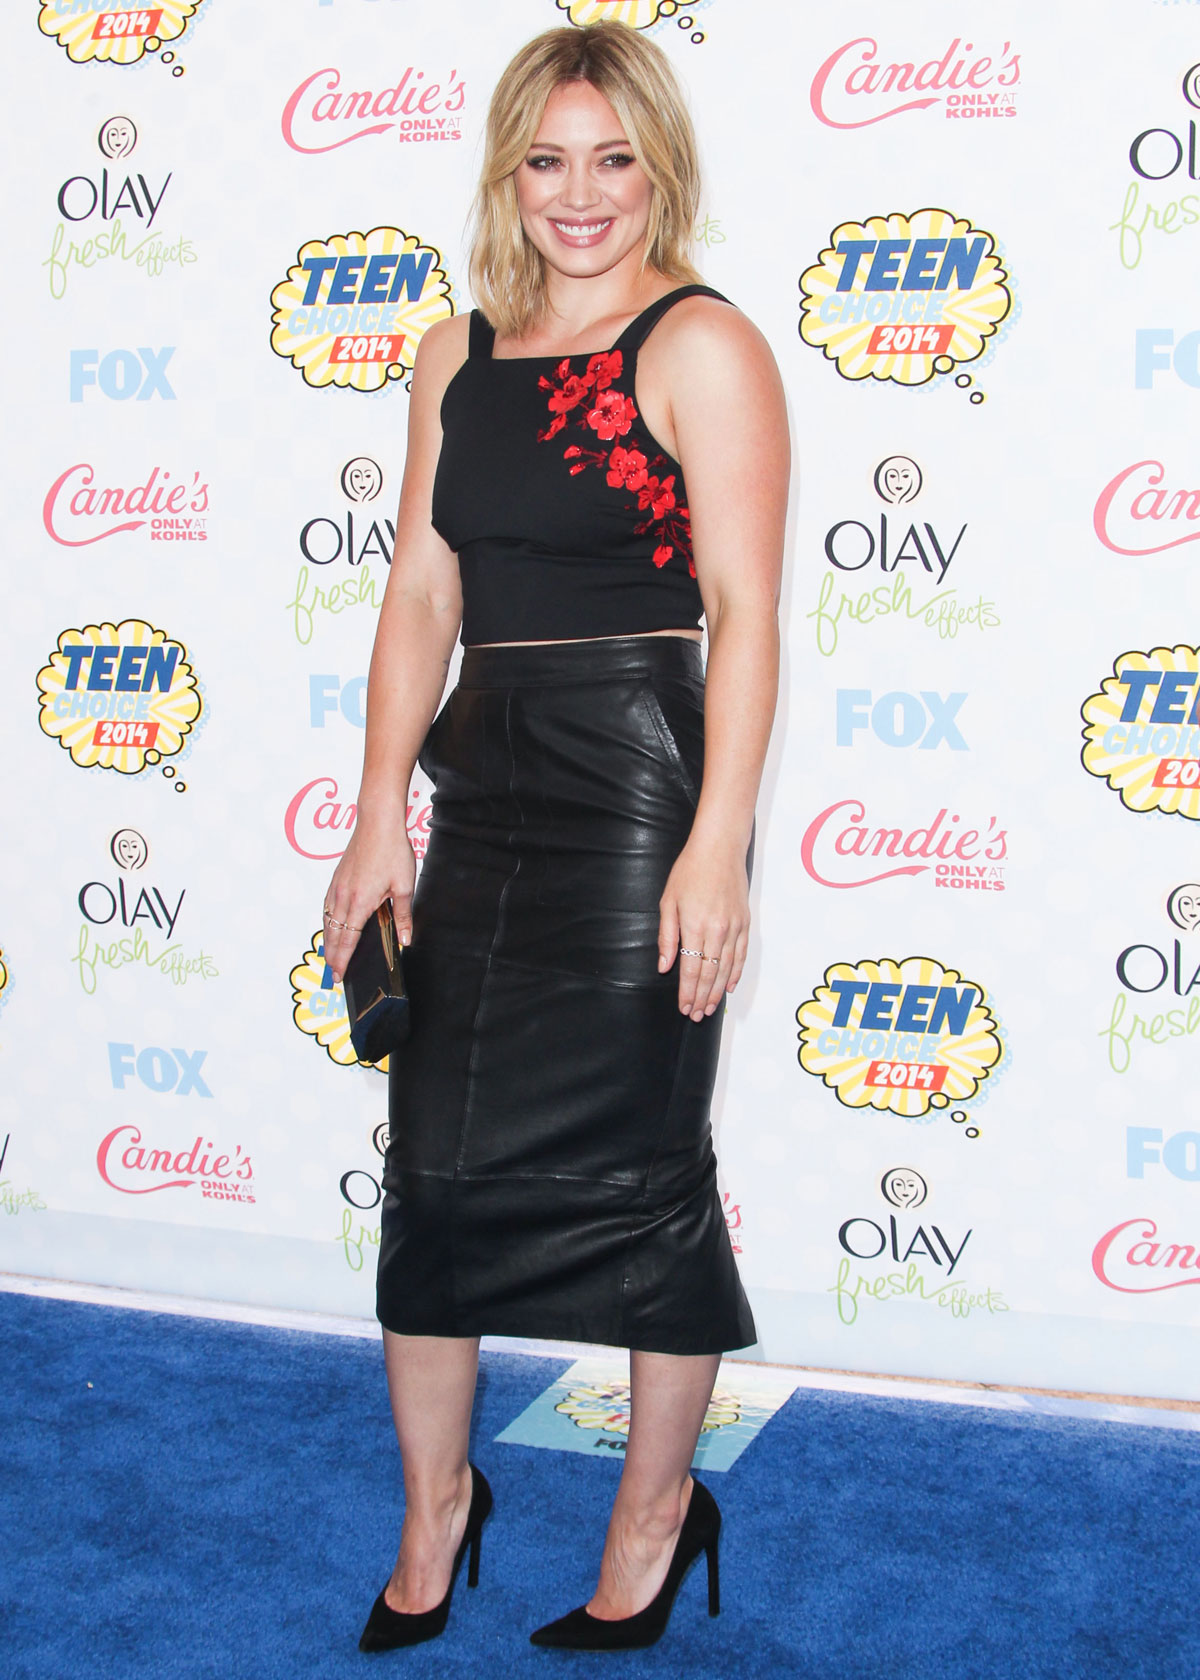 Hilary Duff attends FOX’s 2014 Teen Choice Awards